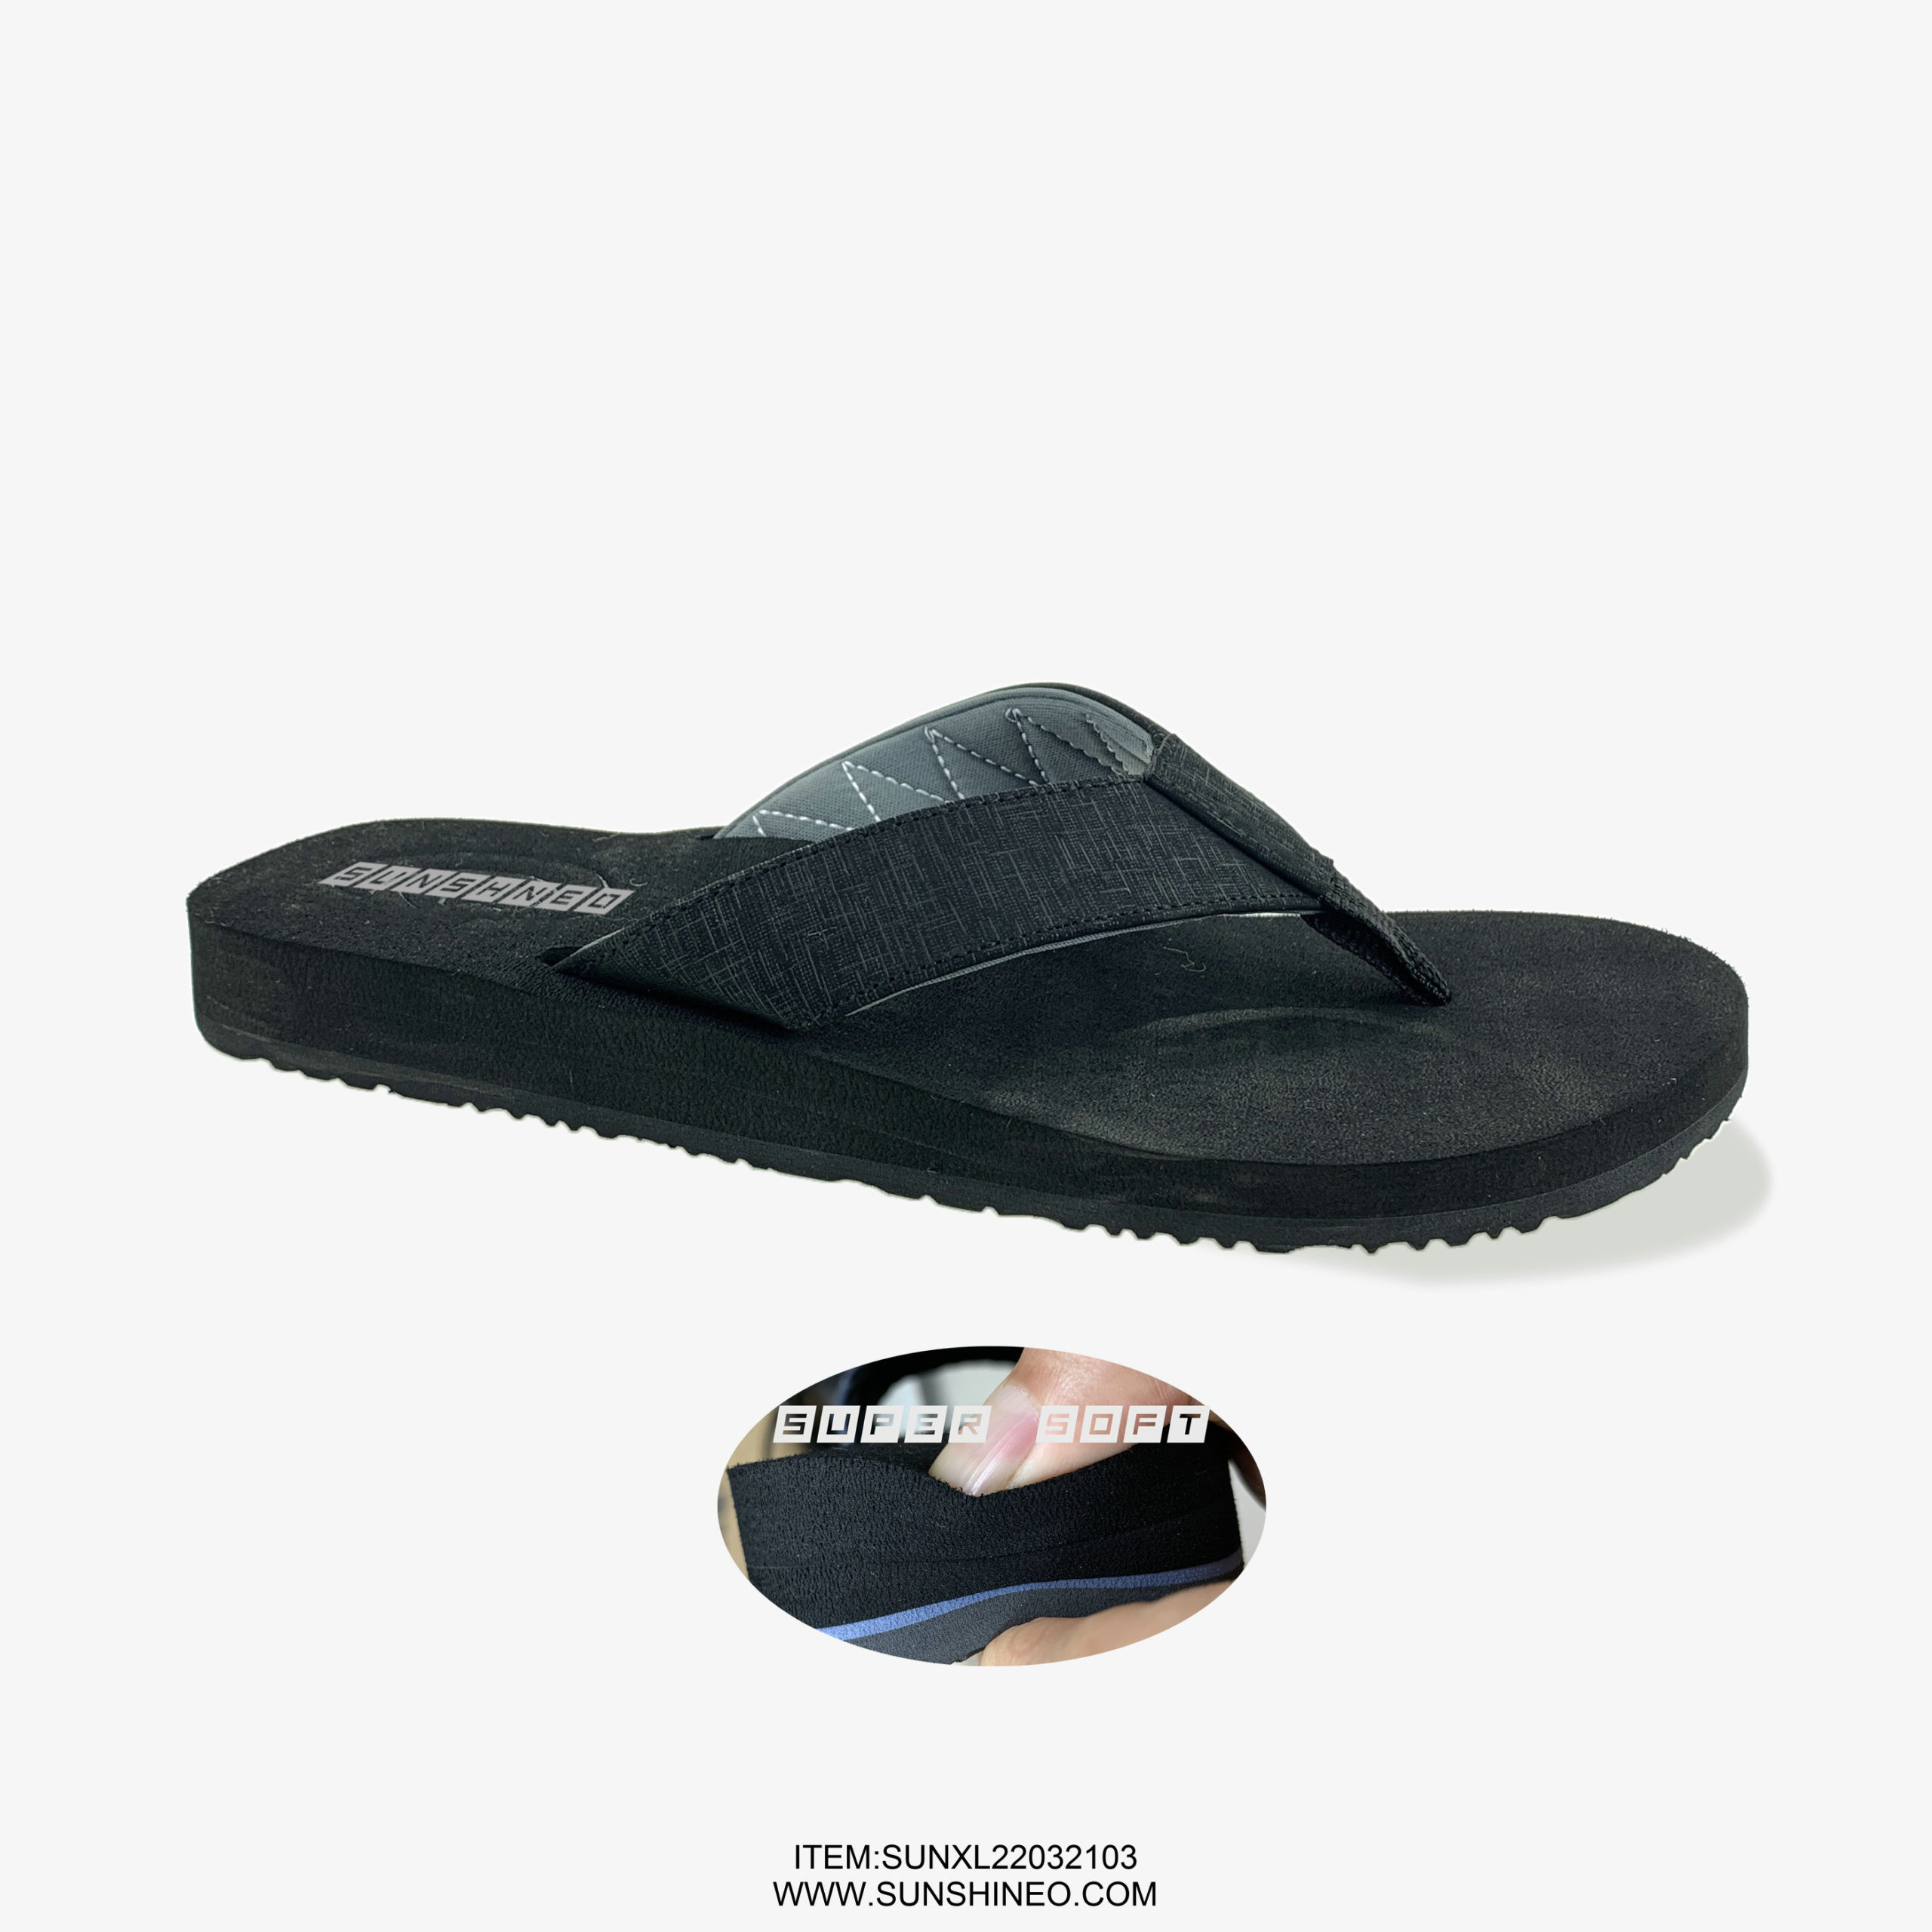 SUNXL22032103 flip flop sandals